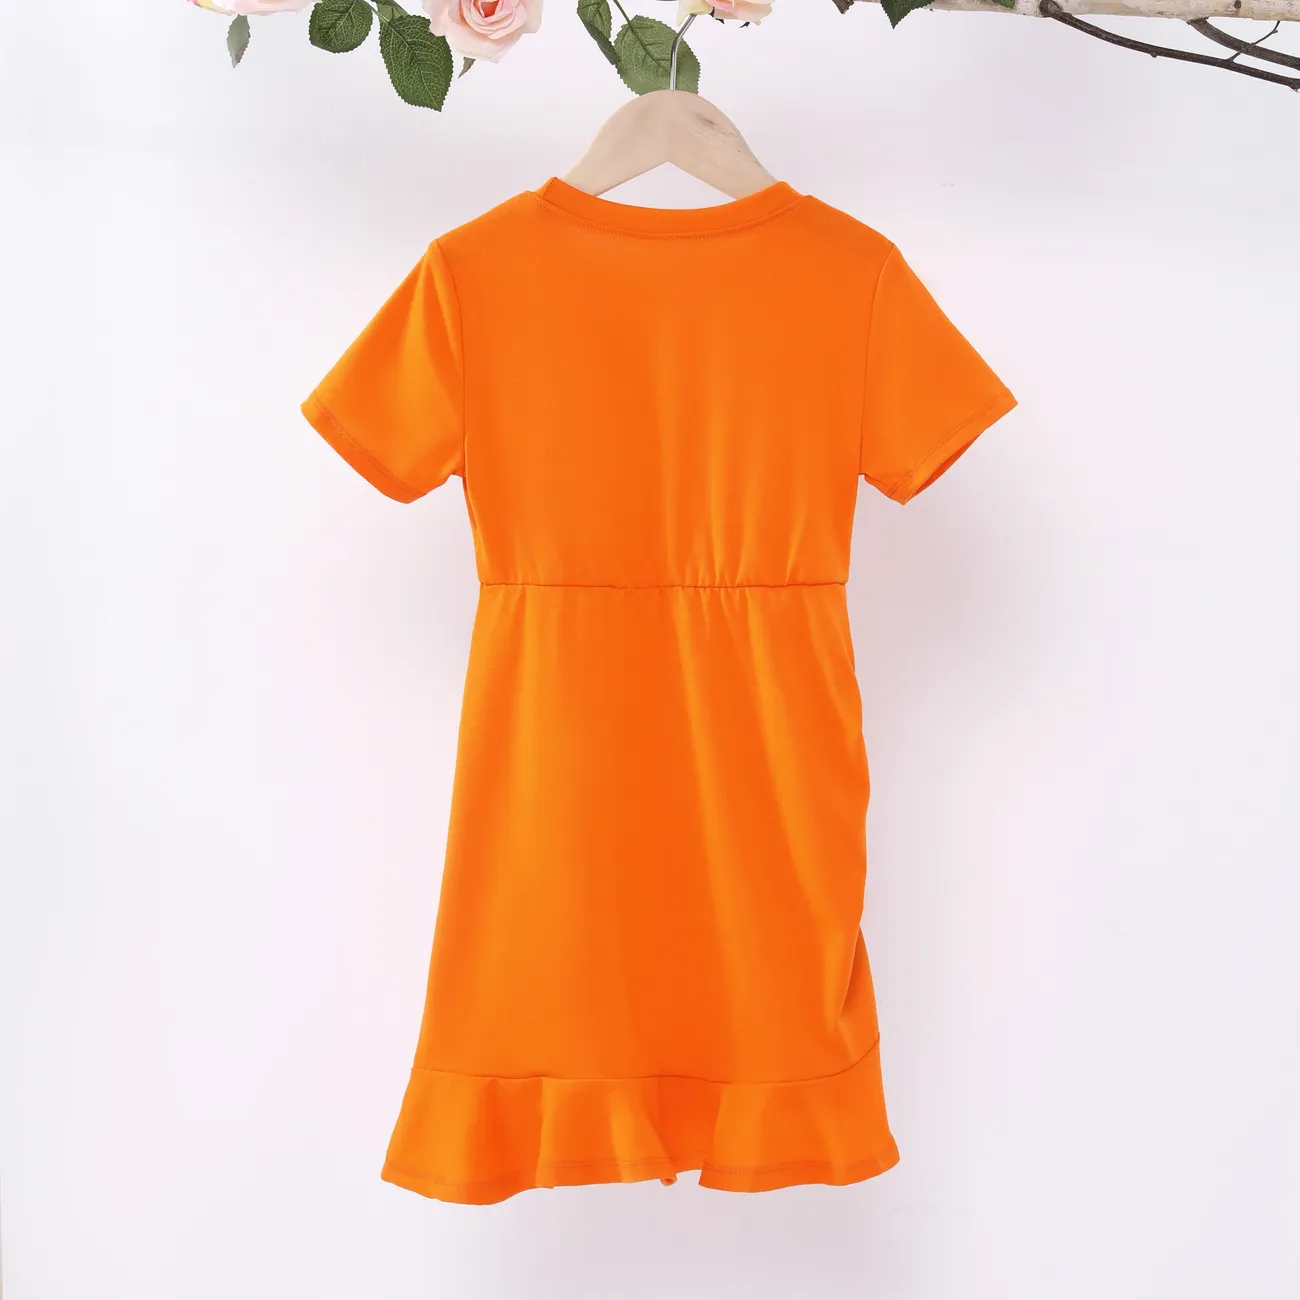 Kinder Mädchen Kordelzug Unifarben Kleider orange big image 1